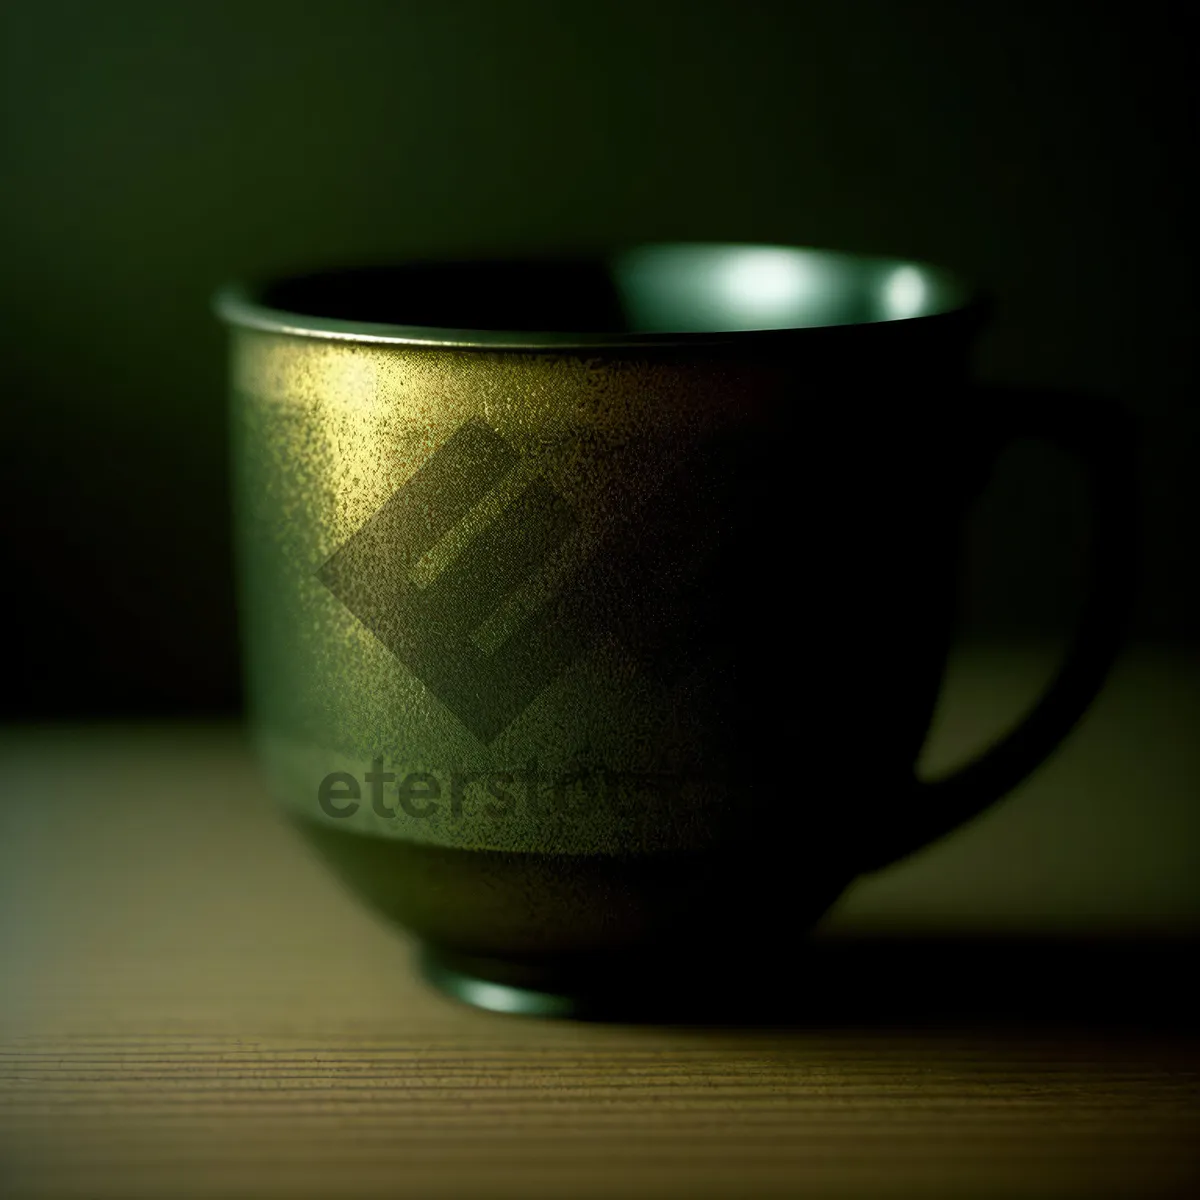 Picture of Morning Brew: Espresso in Ceramic Coffee Mug